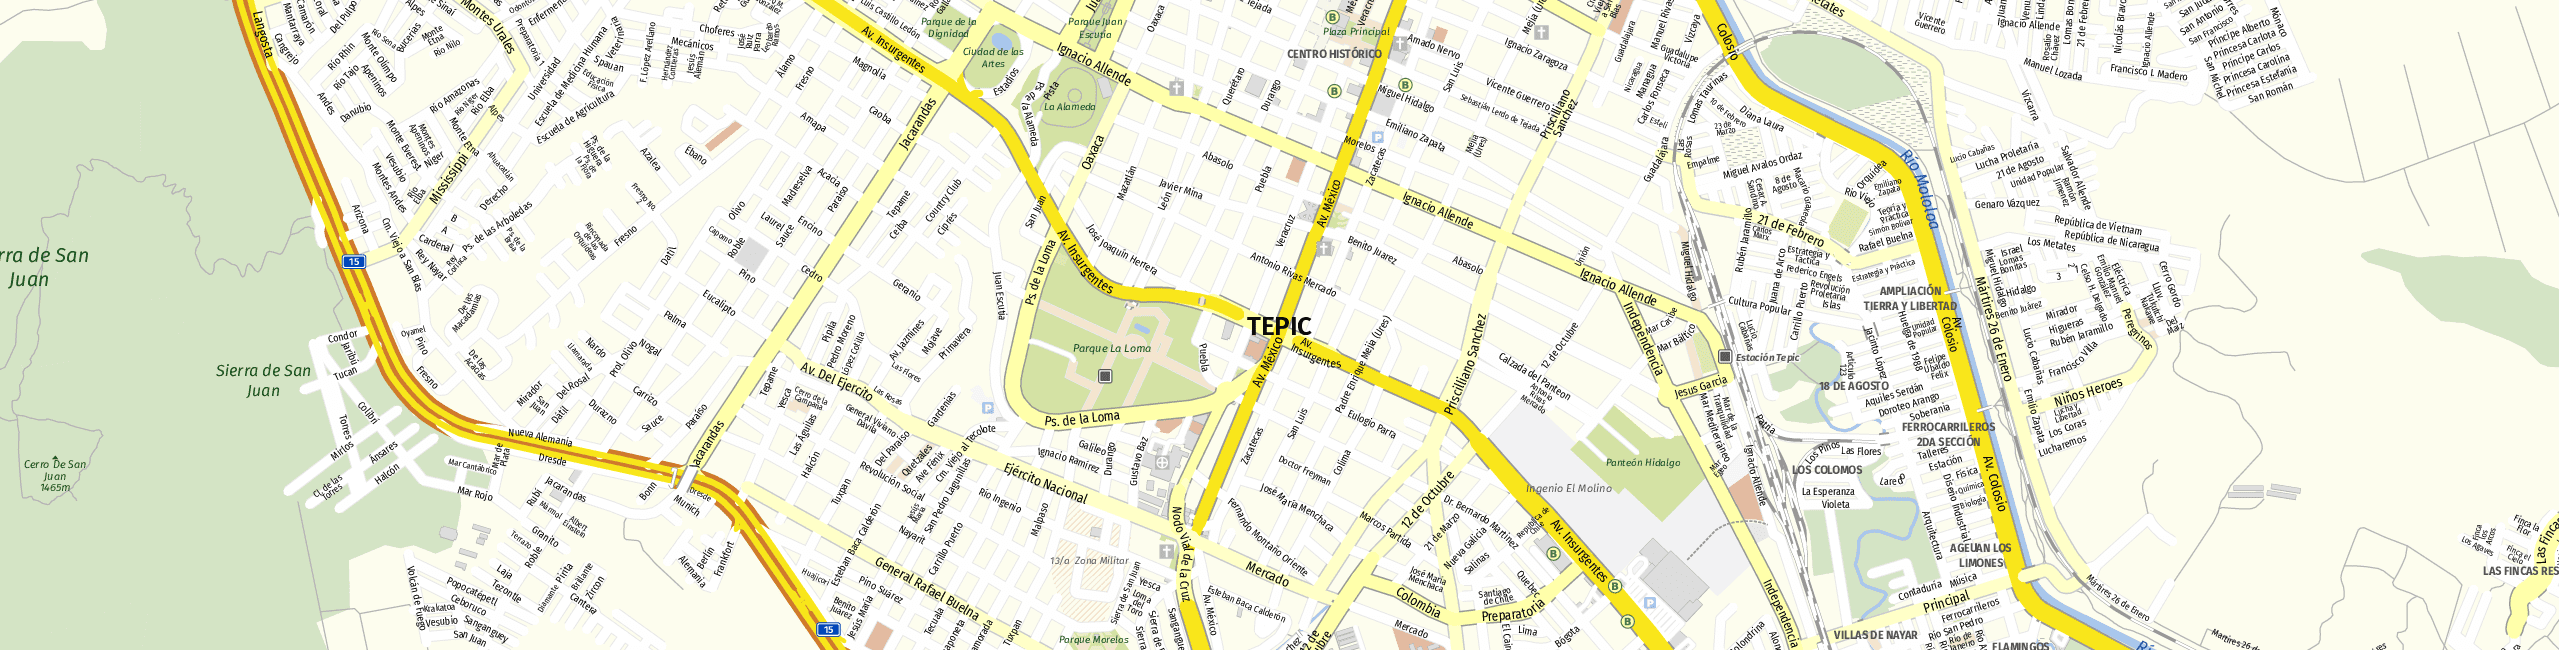 Stadtplan Tepic zum Downloaden.